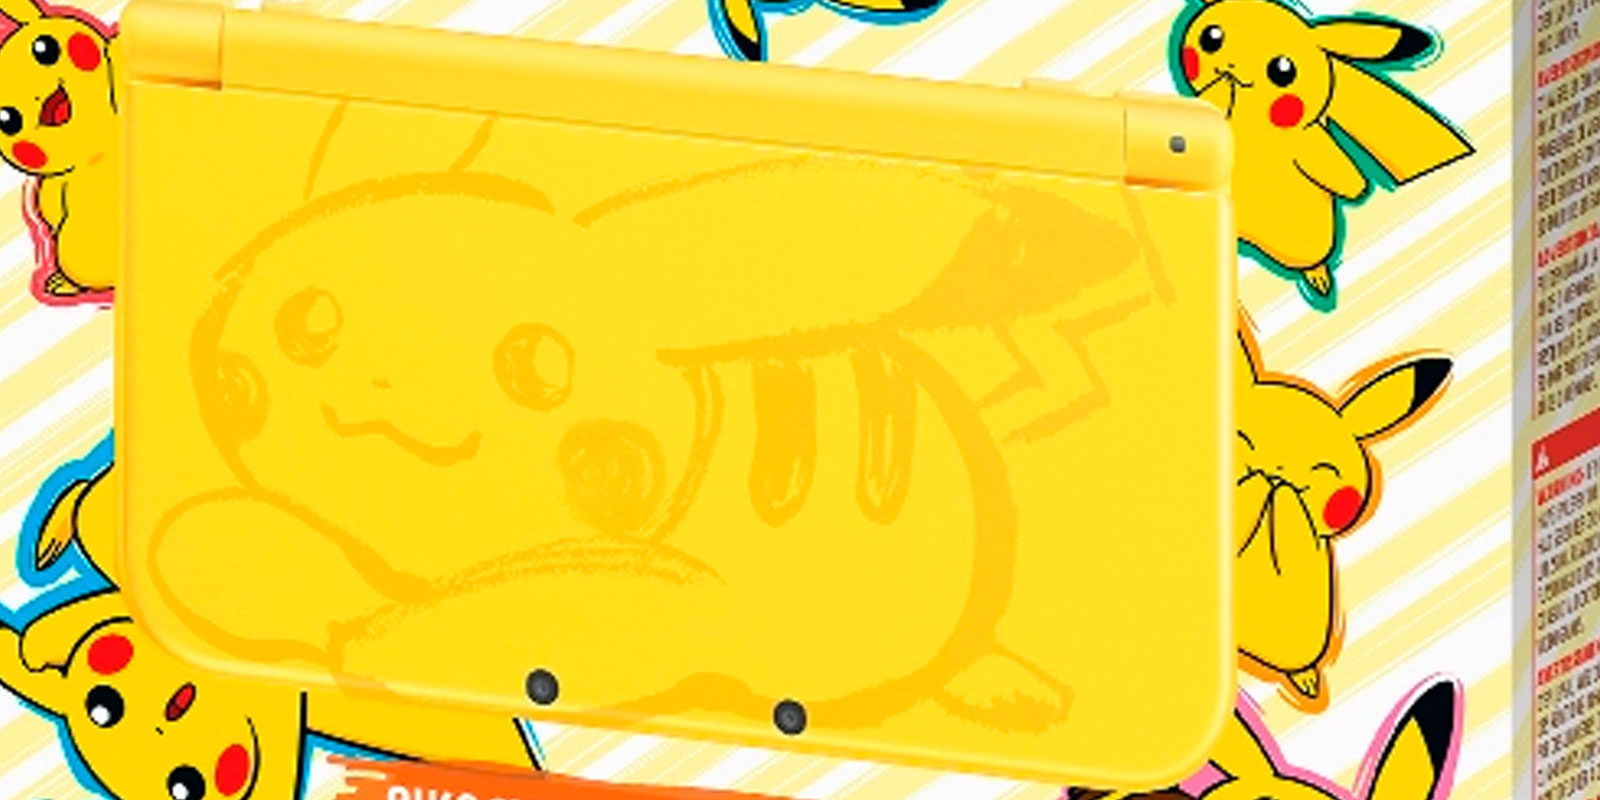 Norteamérica recibirá la New Nintendo 3DS XL Edición Amarillo Pikachu